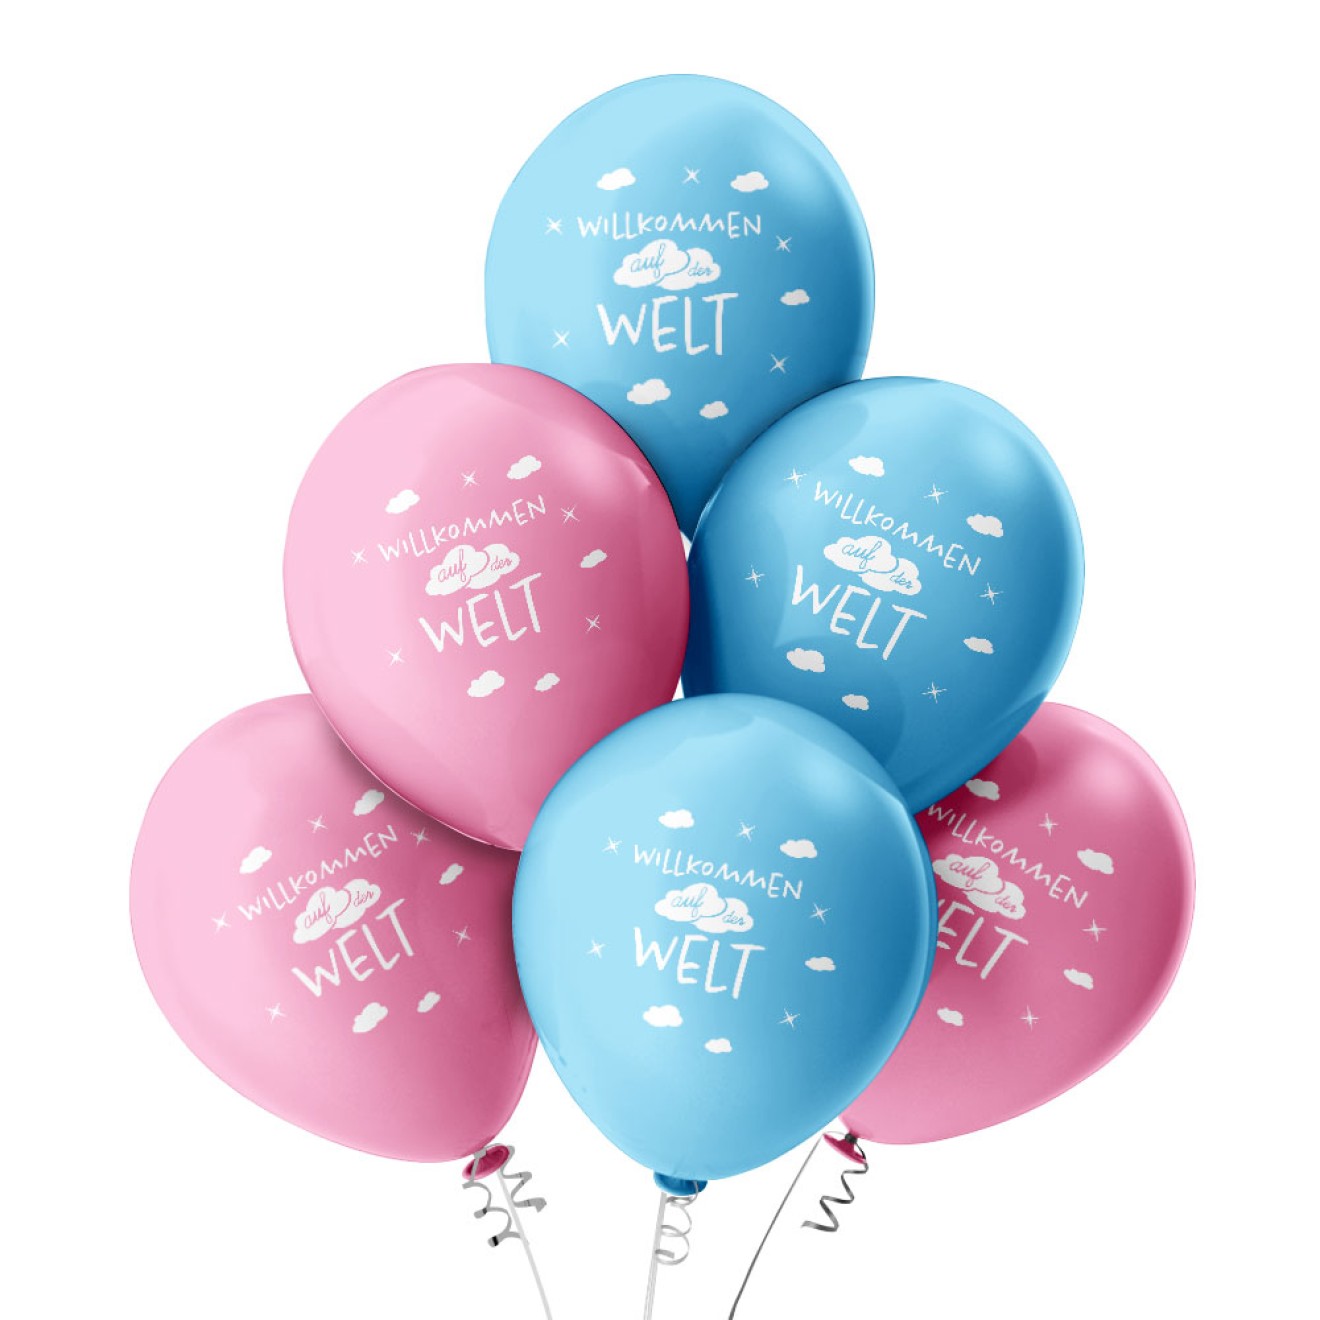 6 Luftballons Willkommen auf der Welt - Freie Farbauswahl